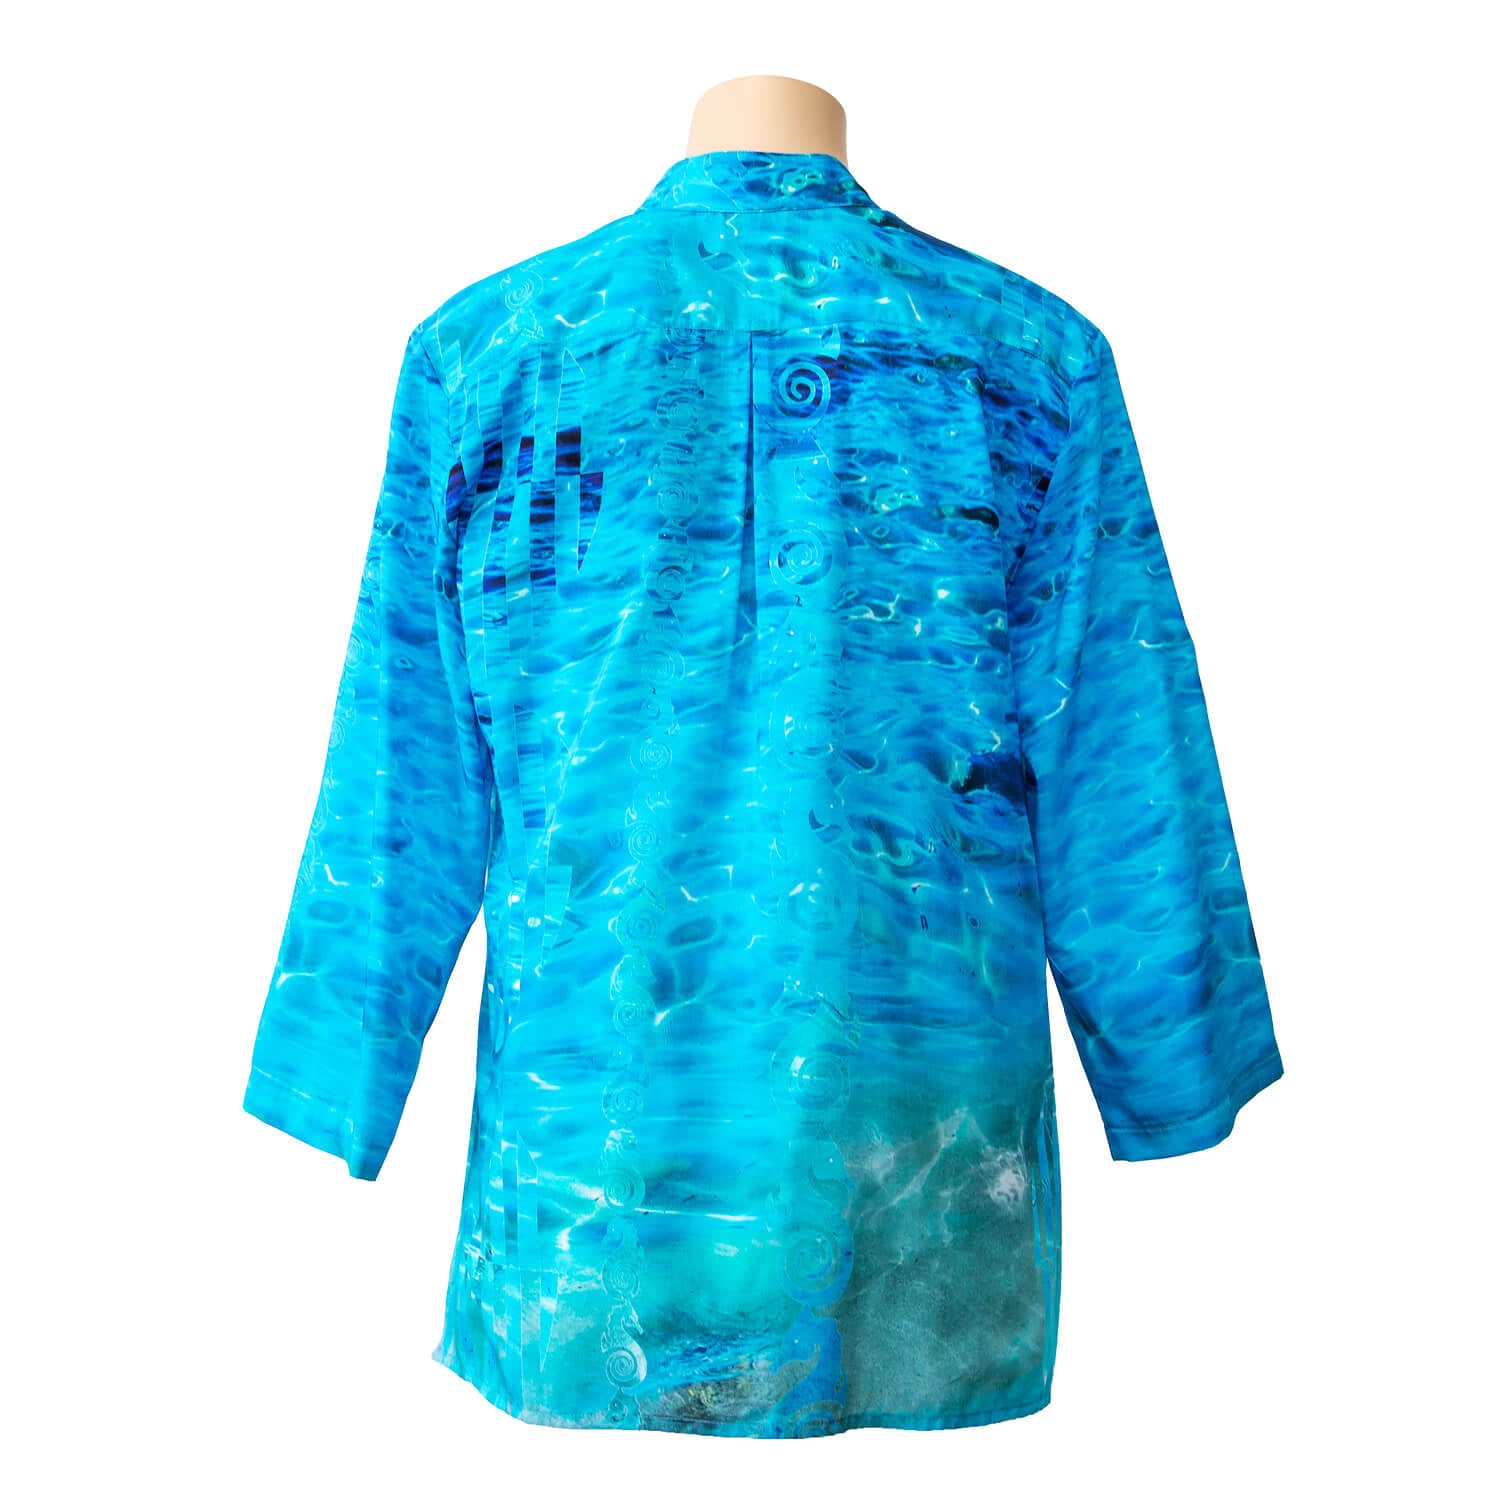 back view aqua blue silk cotton bali shirt by seahorse silks